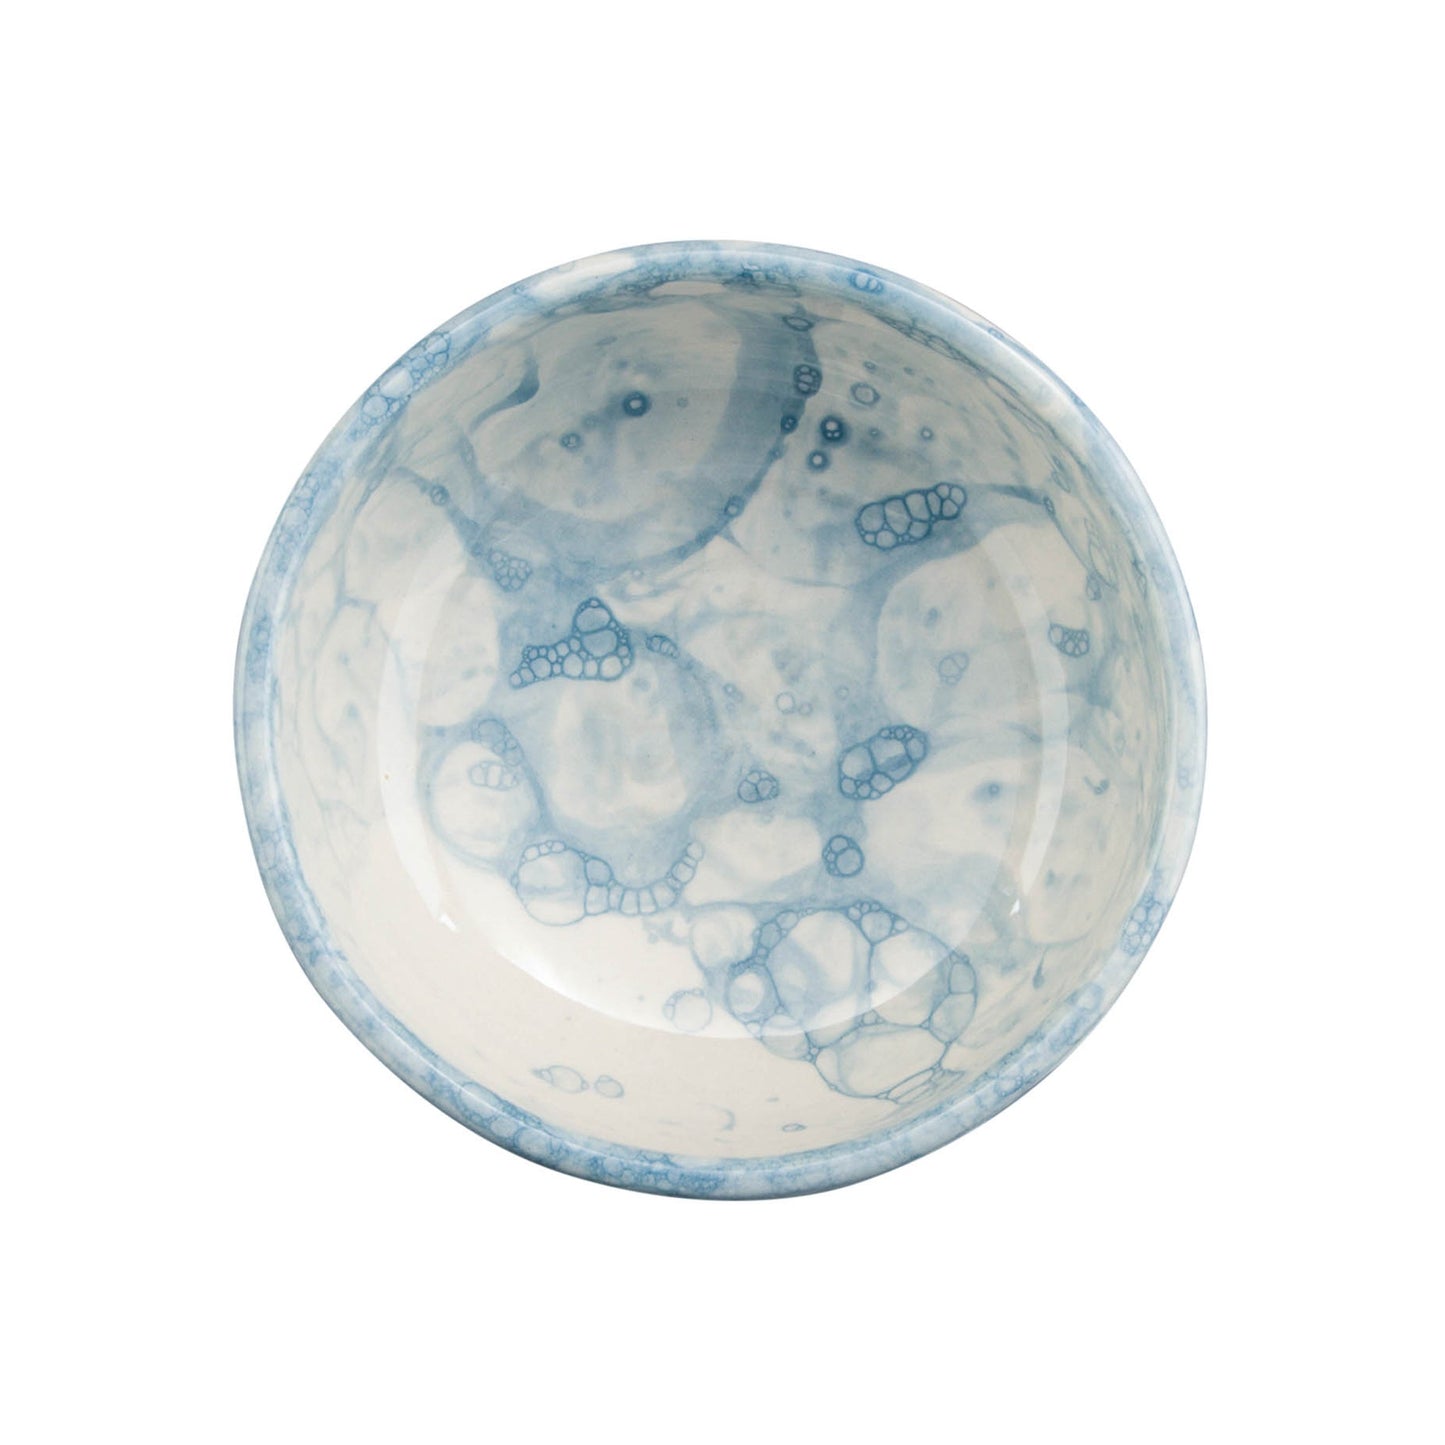 Espuma bowl 11 cm blue - set 2 pcs - MijnWoonplezier